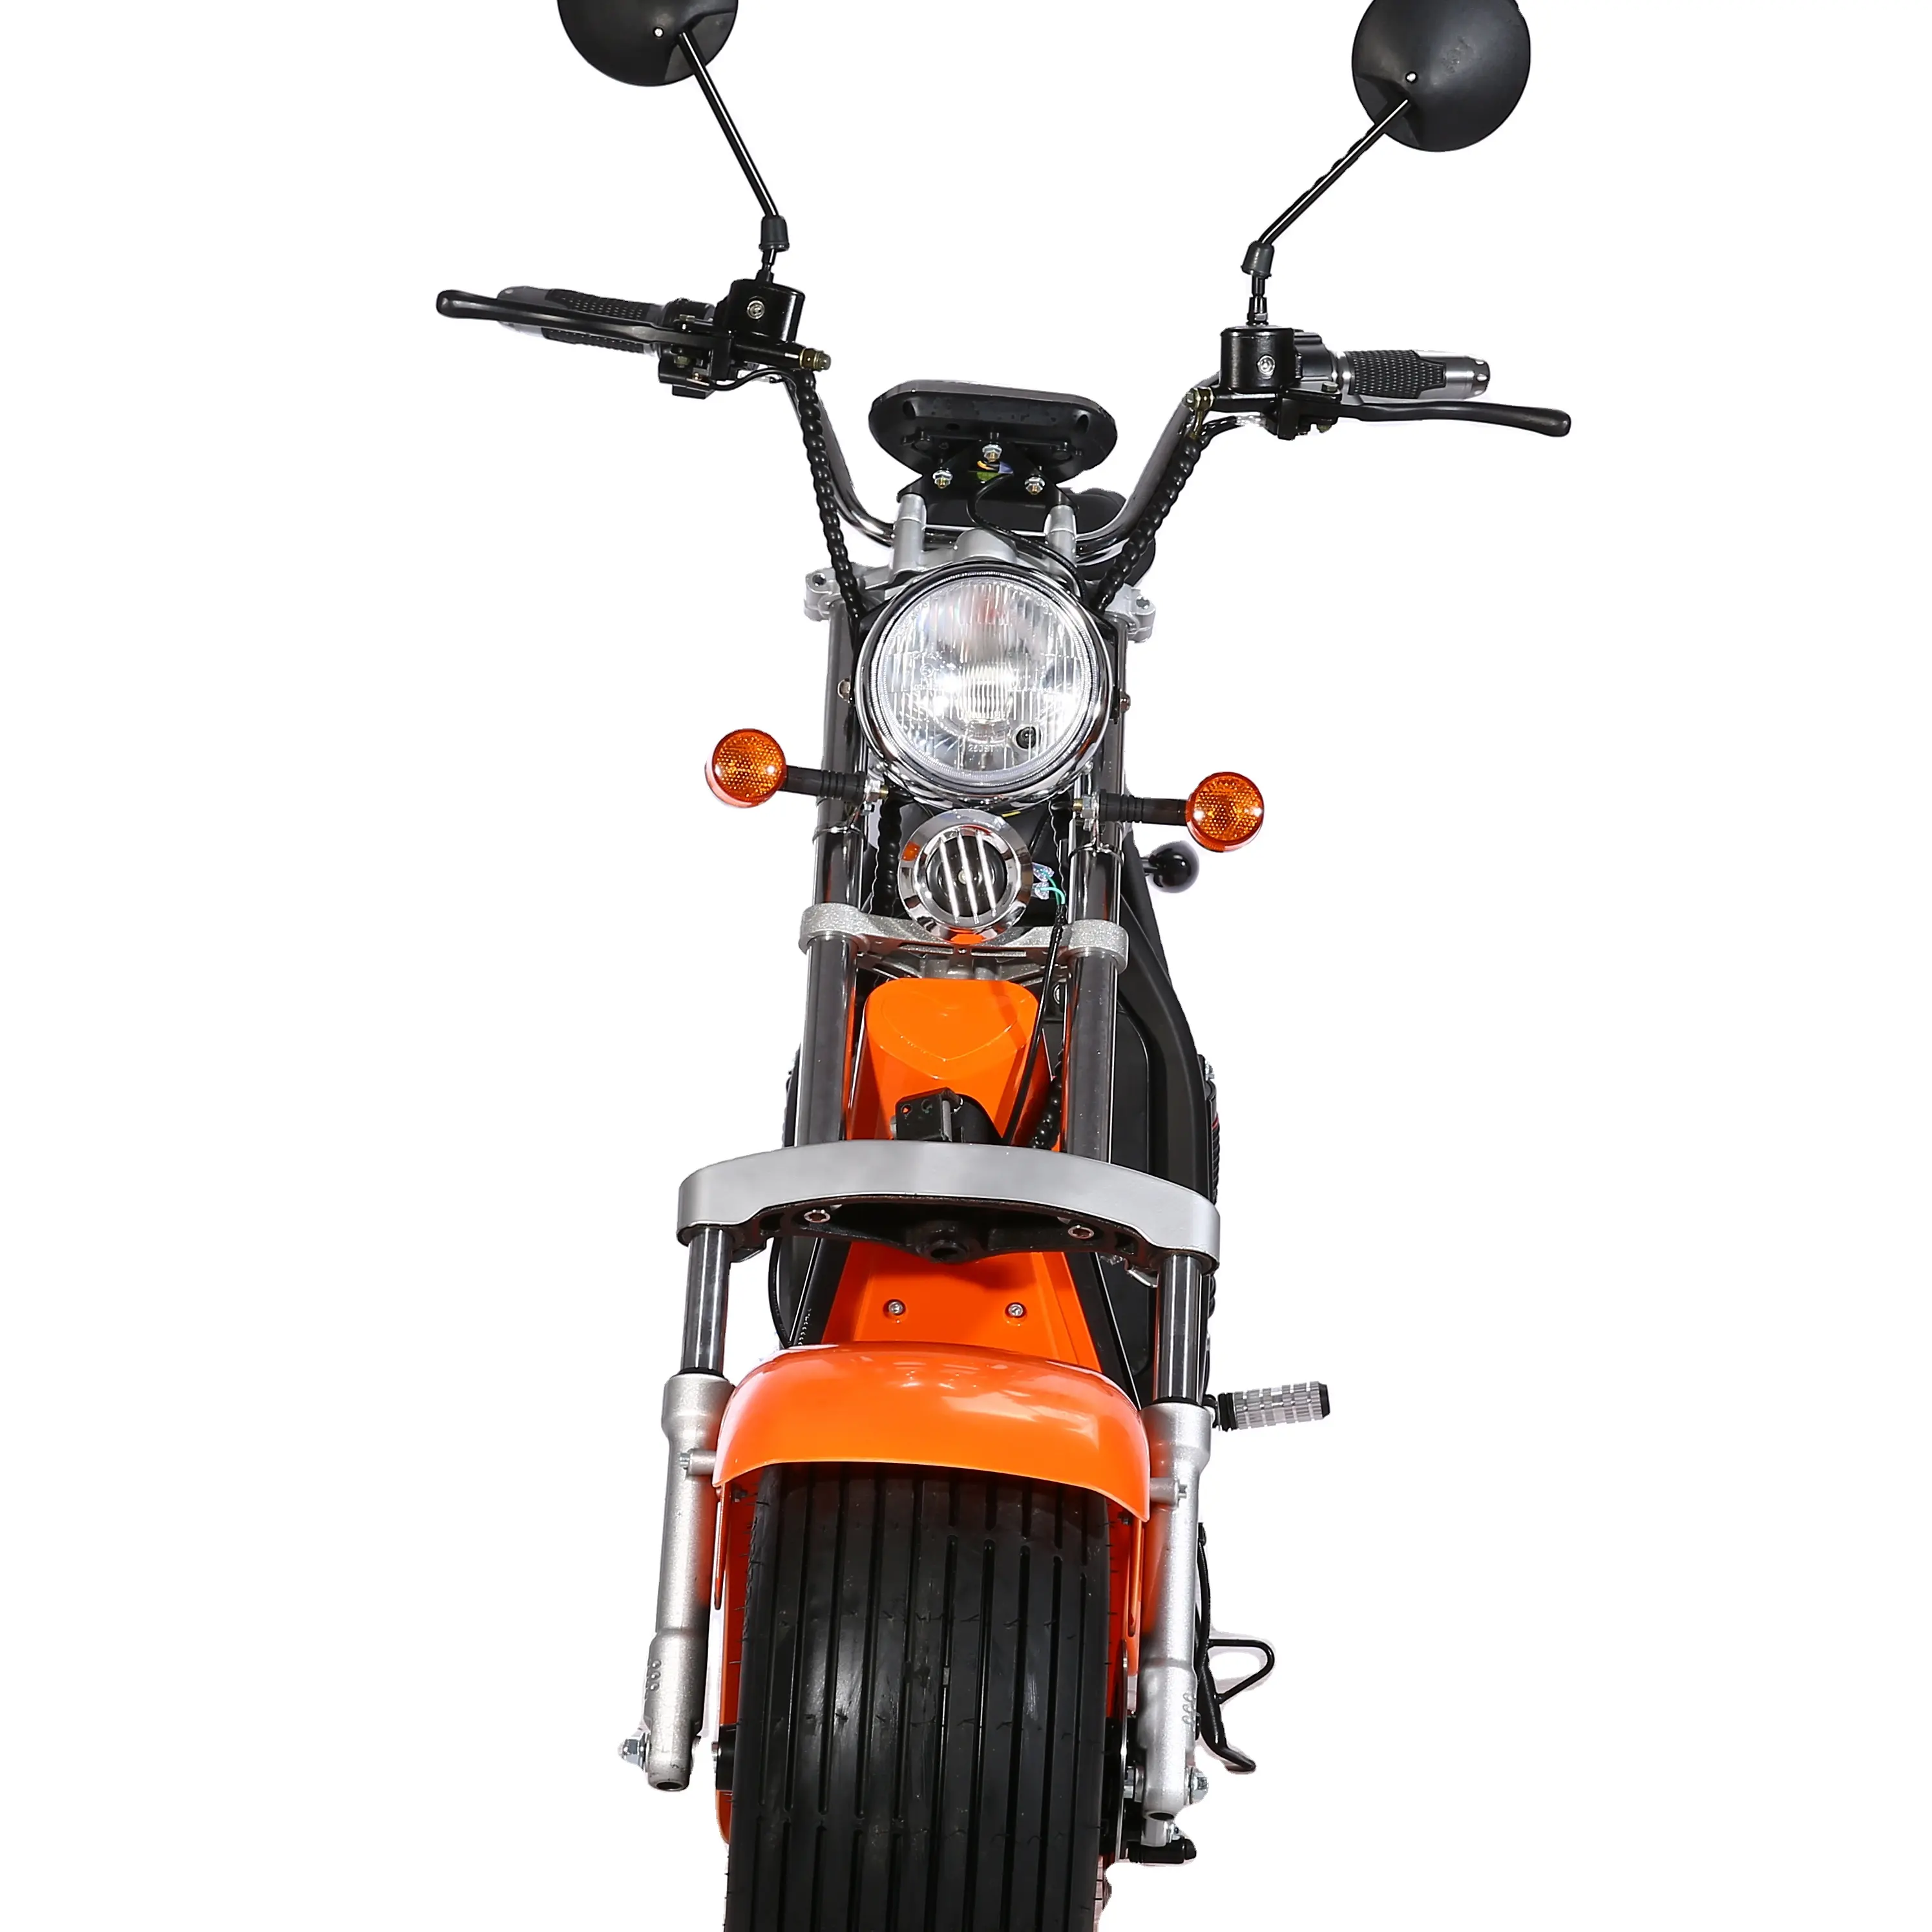 Eec novo design de motocicleta panamá, 1000w, scooter elétrico, 200cc 60v, corrida de motocicletas, sem escova, 40 - 60 km/h